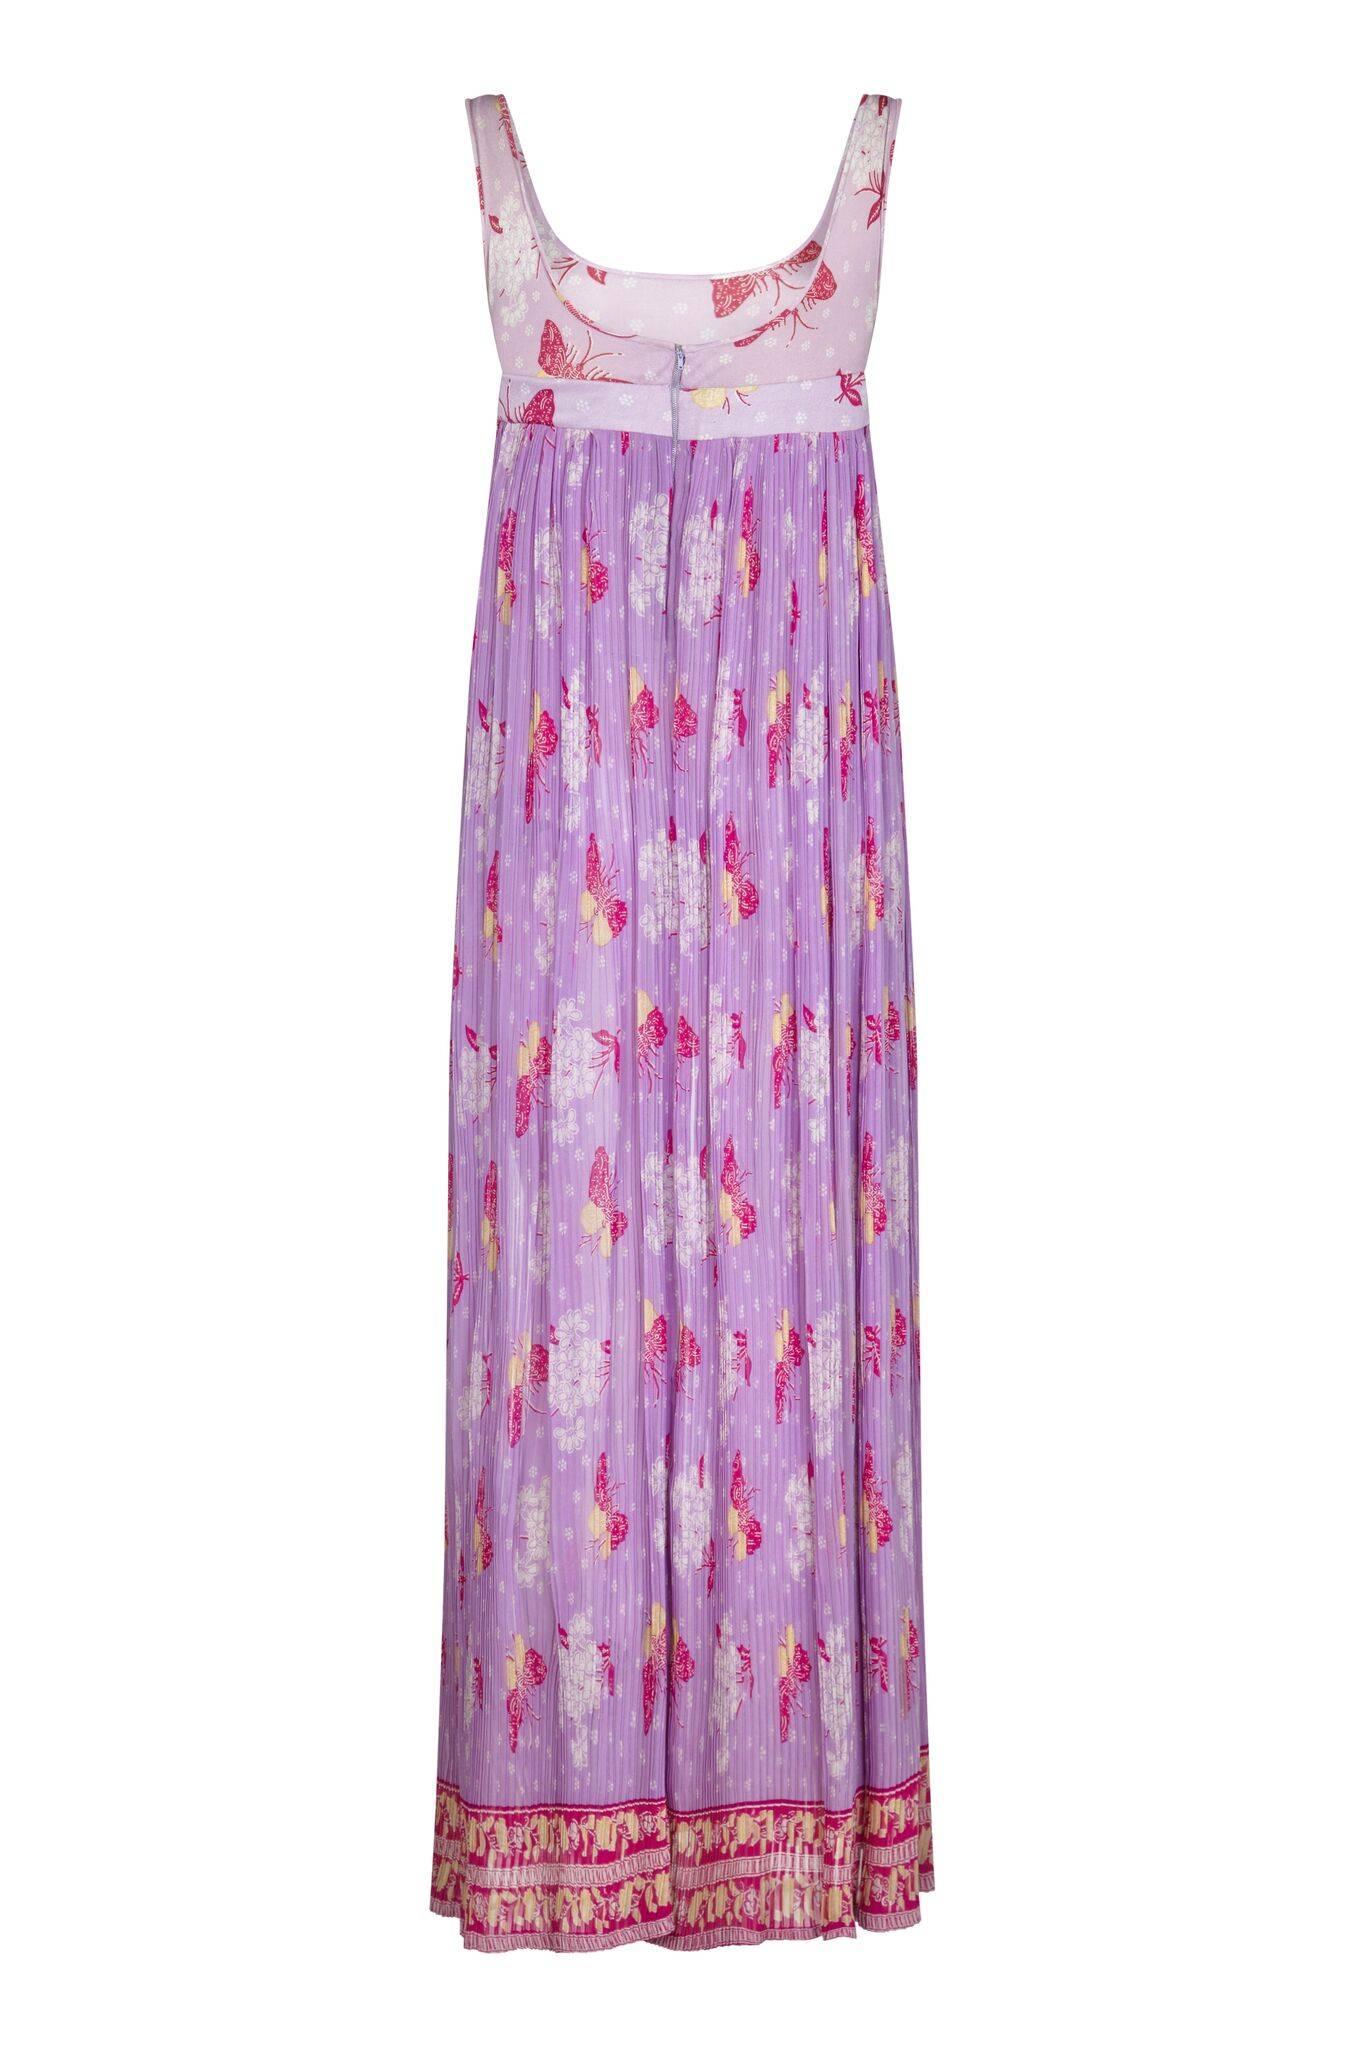 Dieses hübsche lilafarbene Empire-Kleid mit Schmetterlingsmotiv aus den 1970er-Jahren hat eine sommerliche Bohème-Atmosphäre. Das Kleid in voller Länge besteht aus einem feinen Rayon-Stoff für den Rock in einem Lila-Ton, der am Jersey-Mieder in